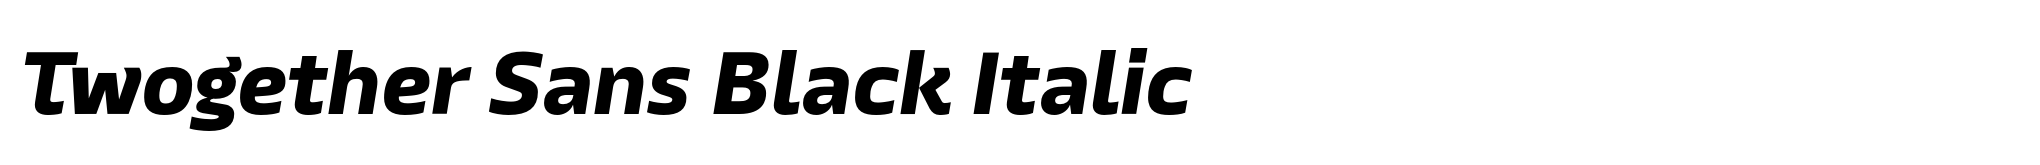 Twogether Sans Black Italic image